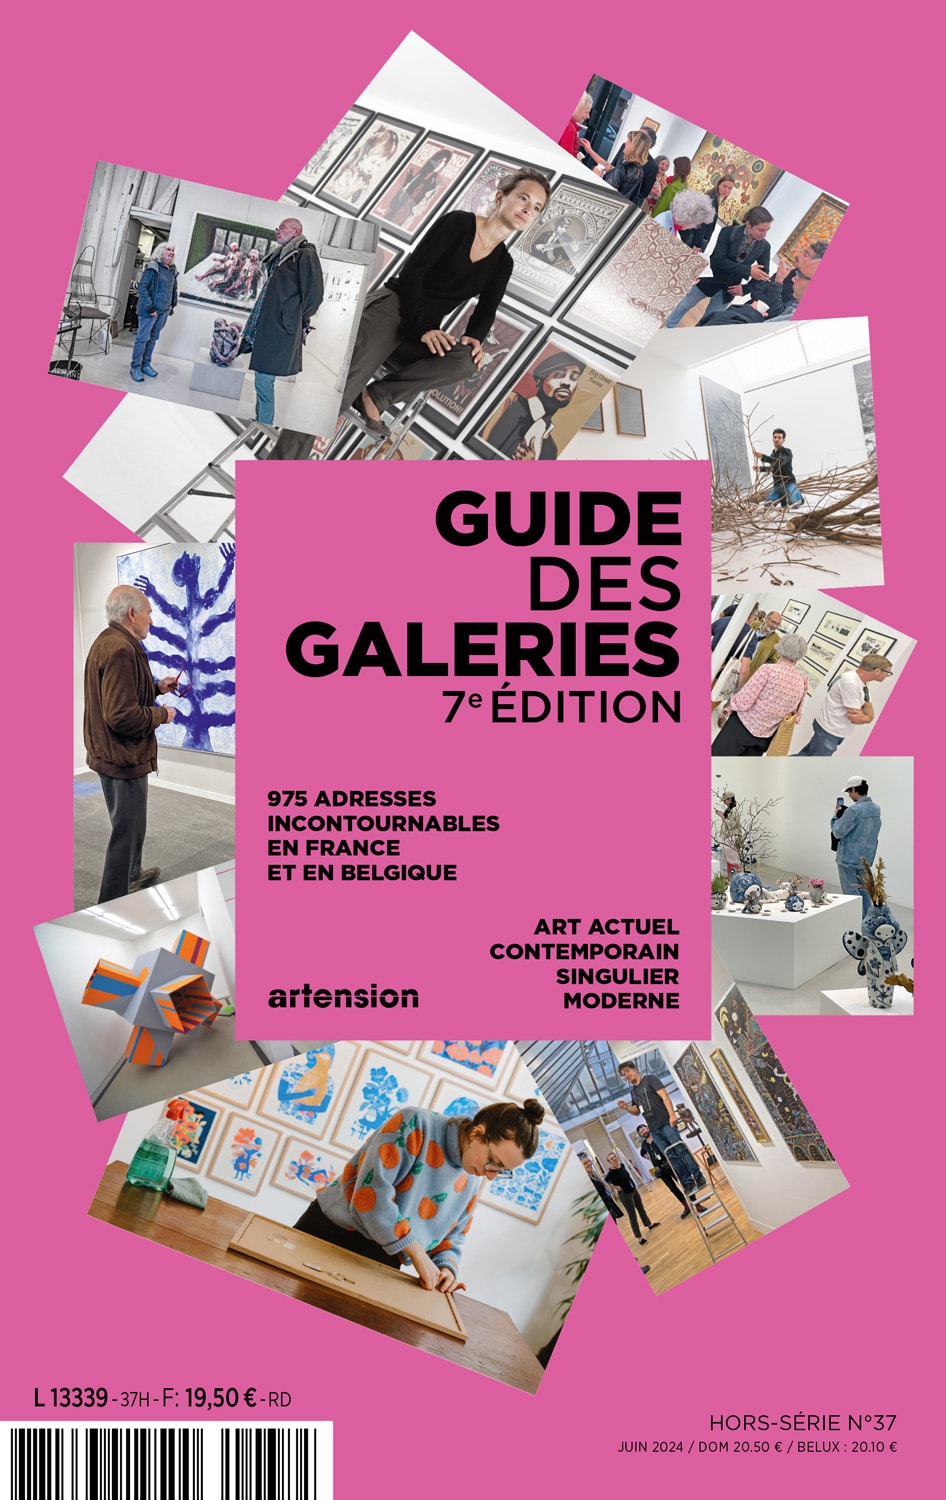 Guide des galeries – 7e édition